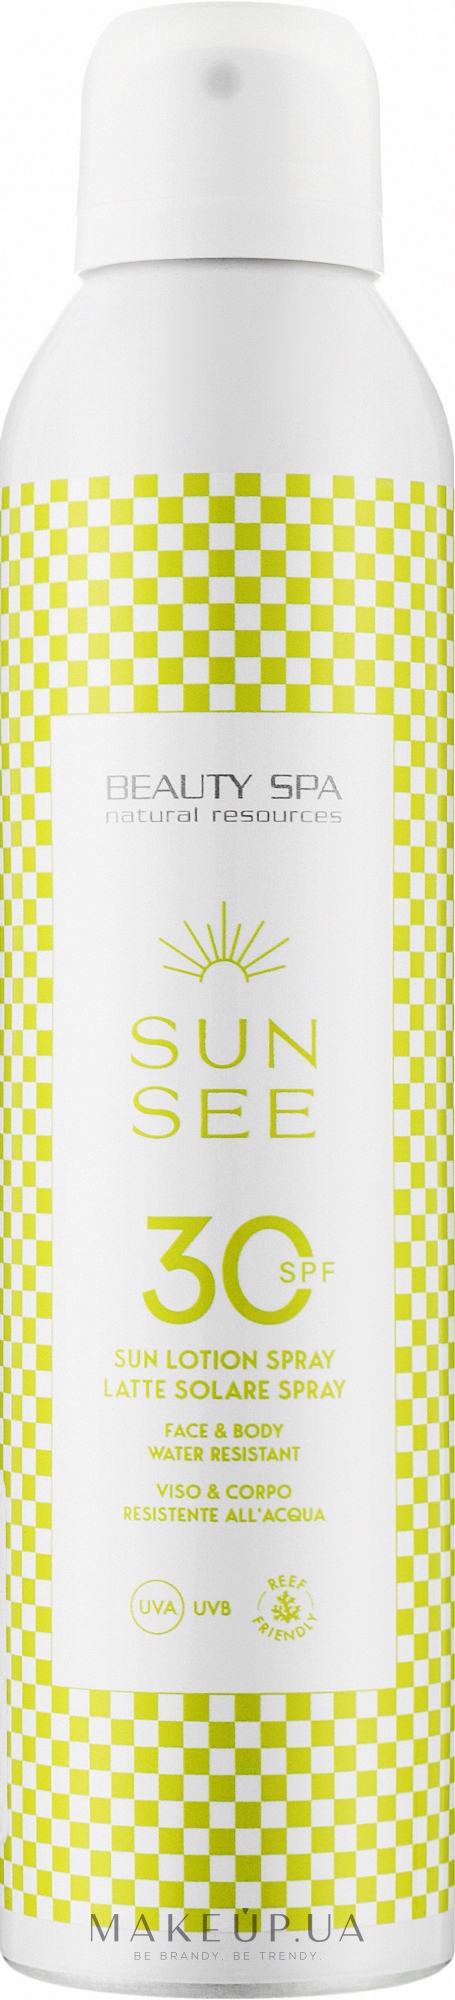 Сонцезахисна водостійка емульсія-спрей SPF 30 для обличчя й тіла - Beauty Spa Sun Lotion Spray — фото 200ml